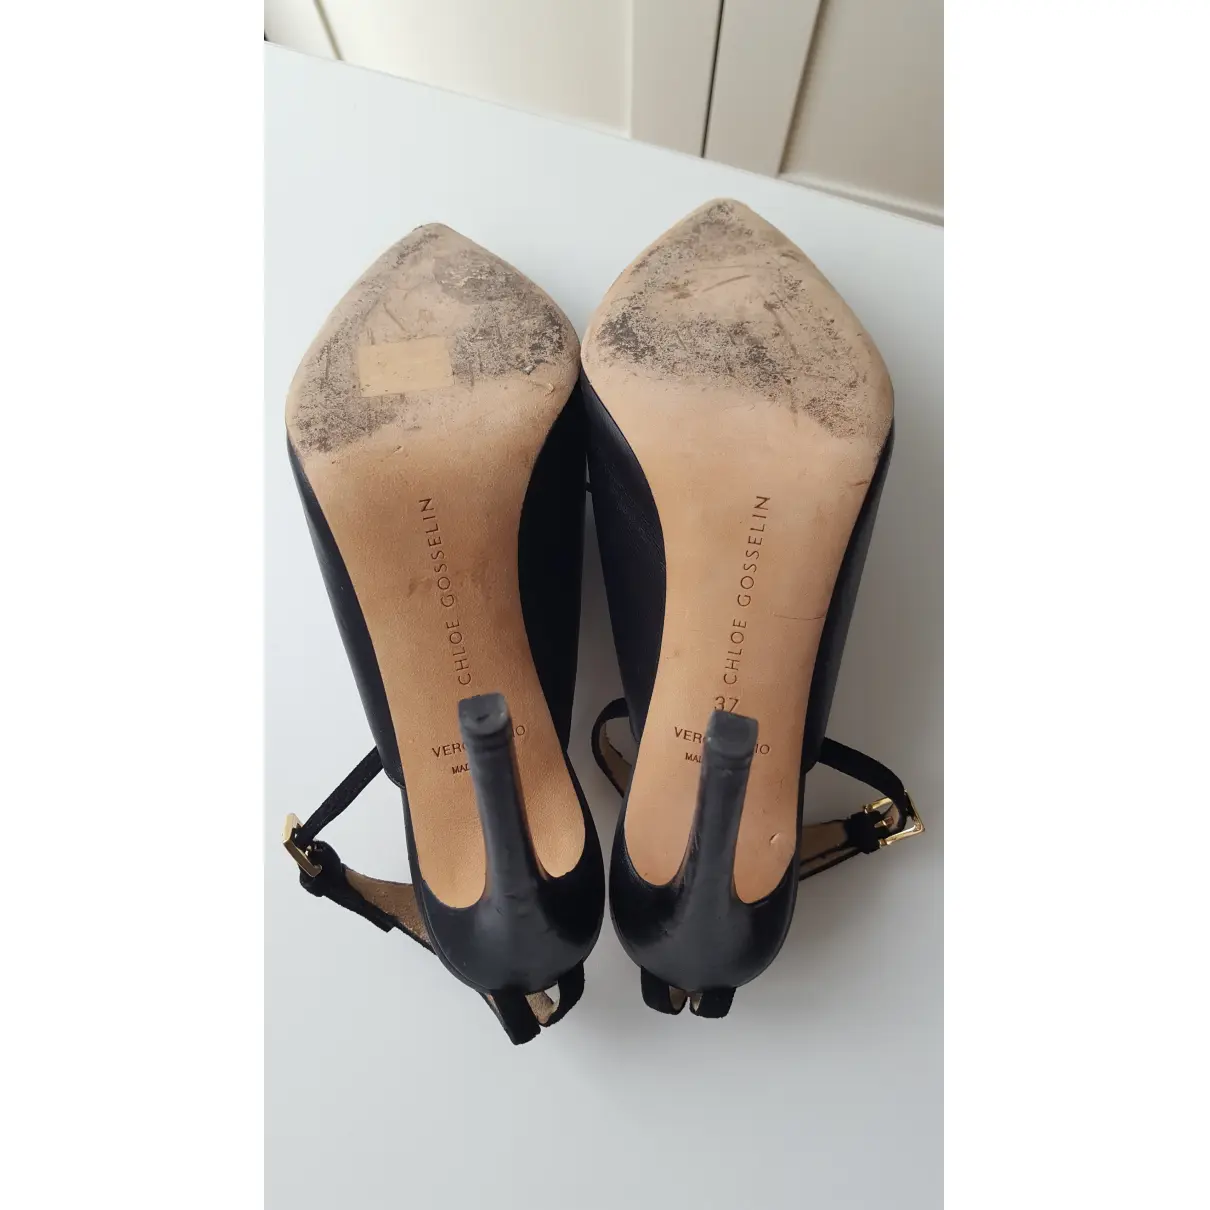 Leather heels Chloe Gosselin